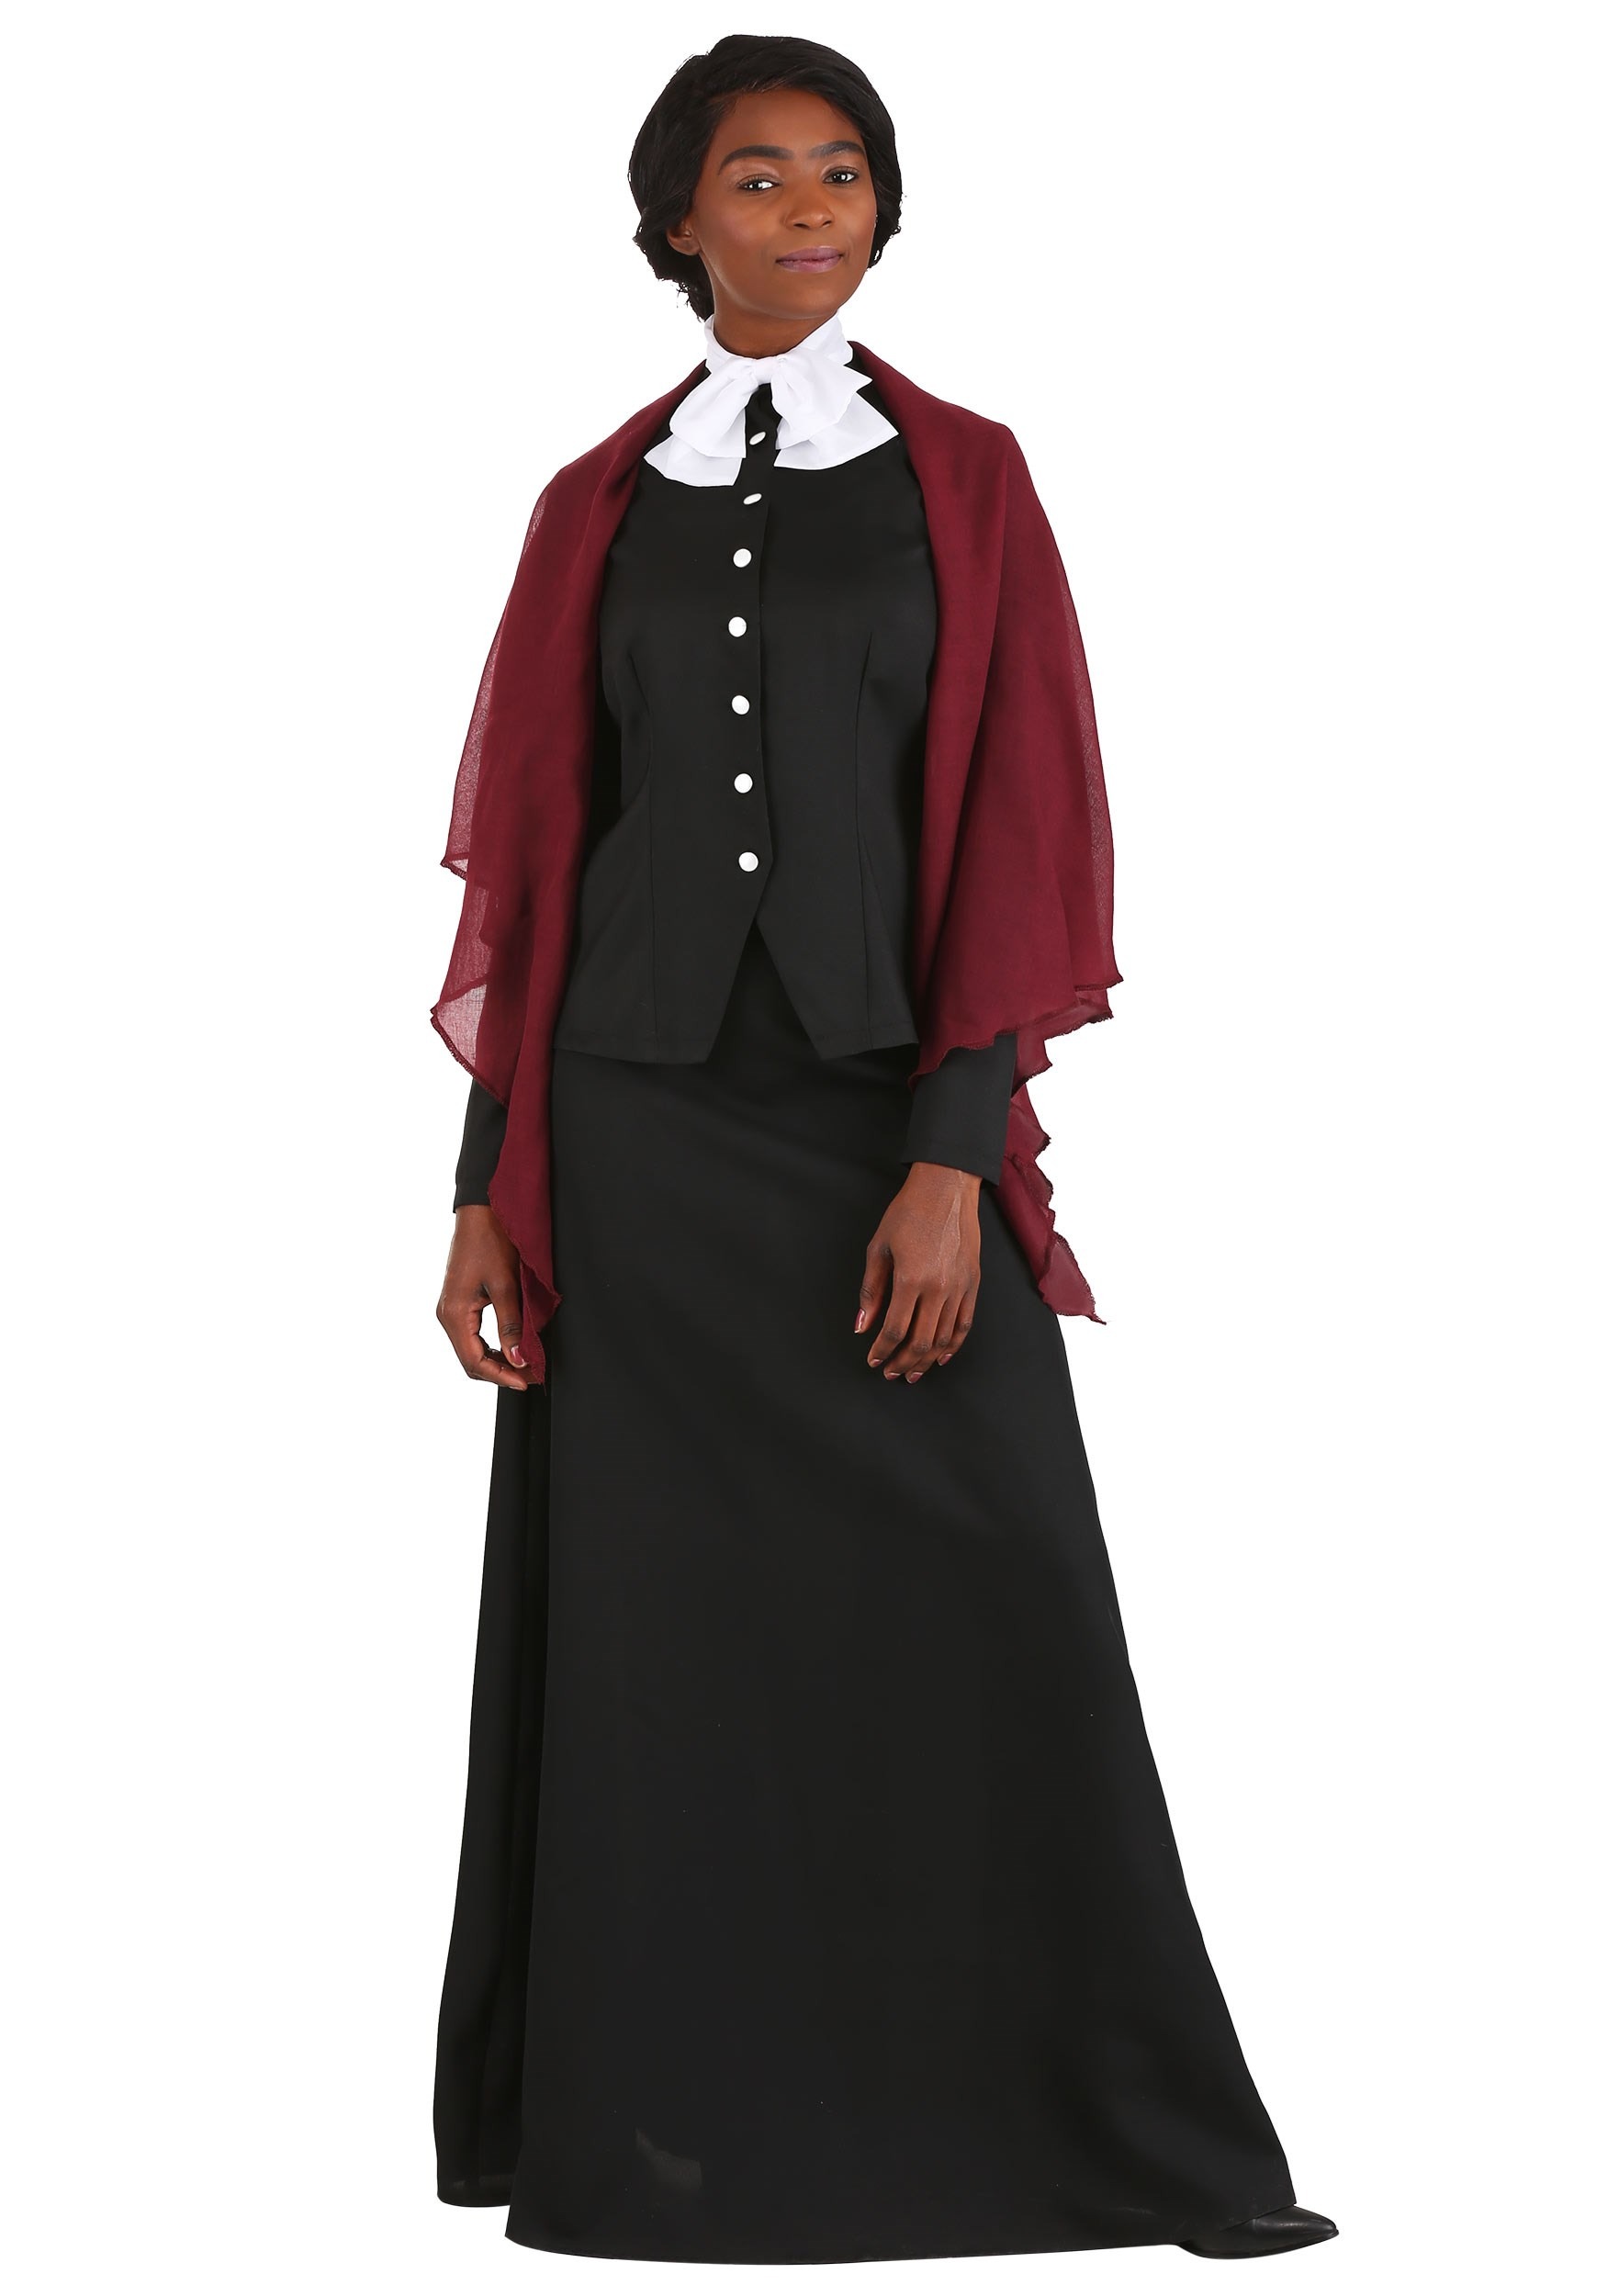 Women's Plus Size Harriet Tubman Fancy Dress Costume Dress